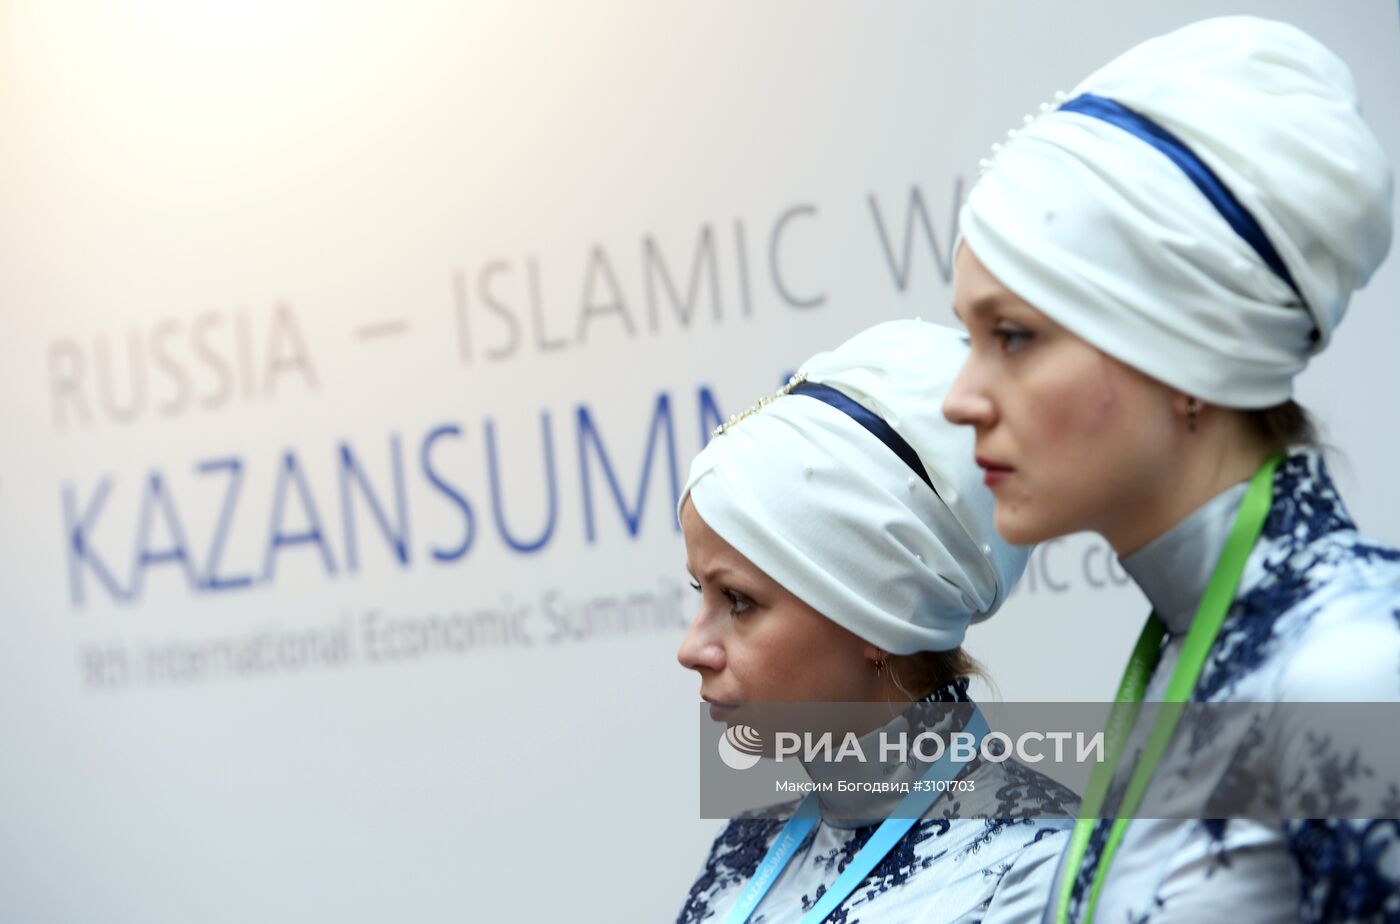 IX Международный экономический саммит "Россия — Исламский мир: KazanSummit 2017". День первый